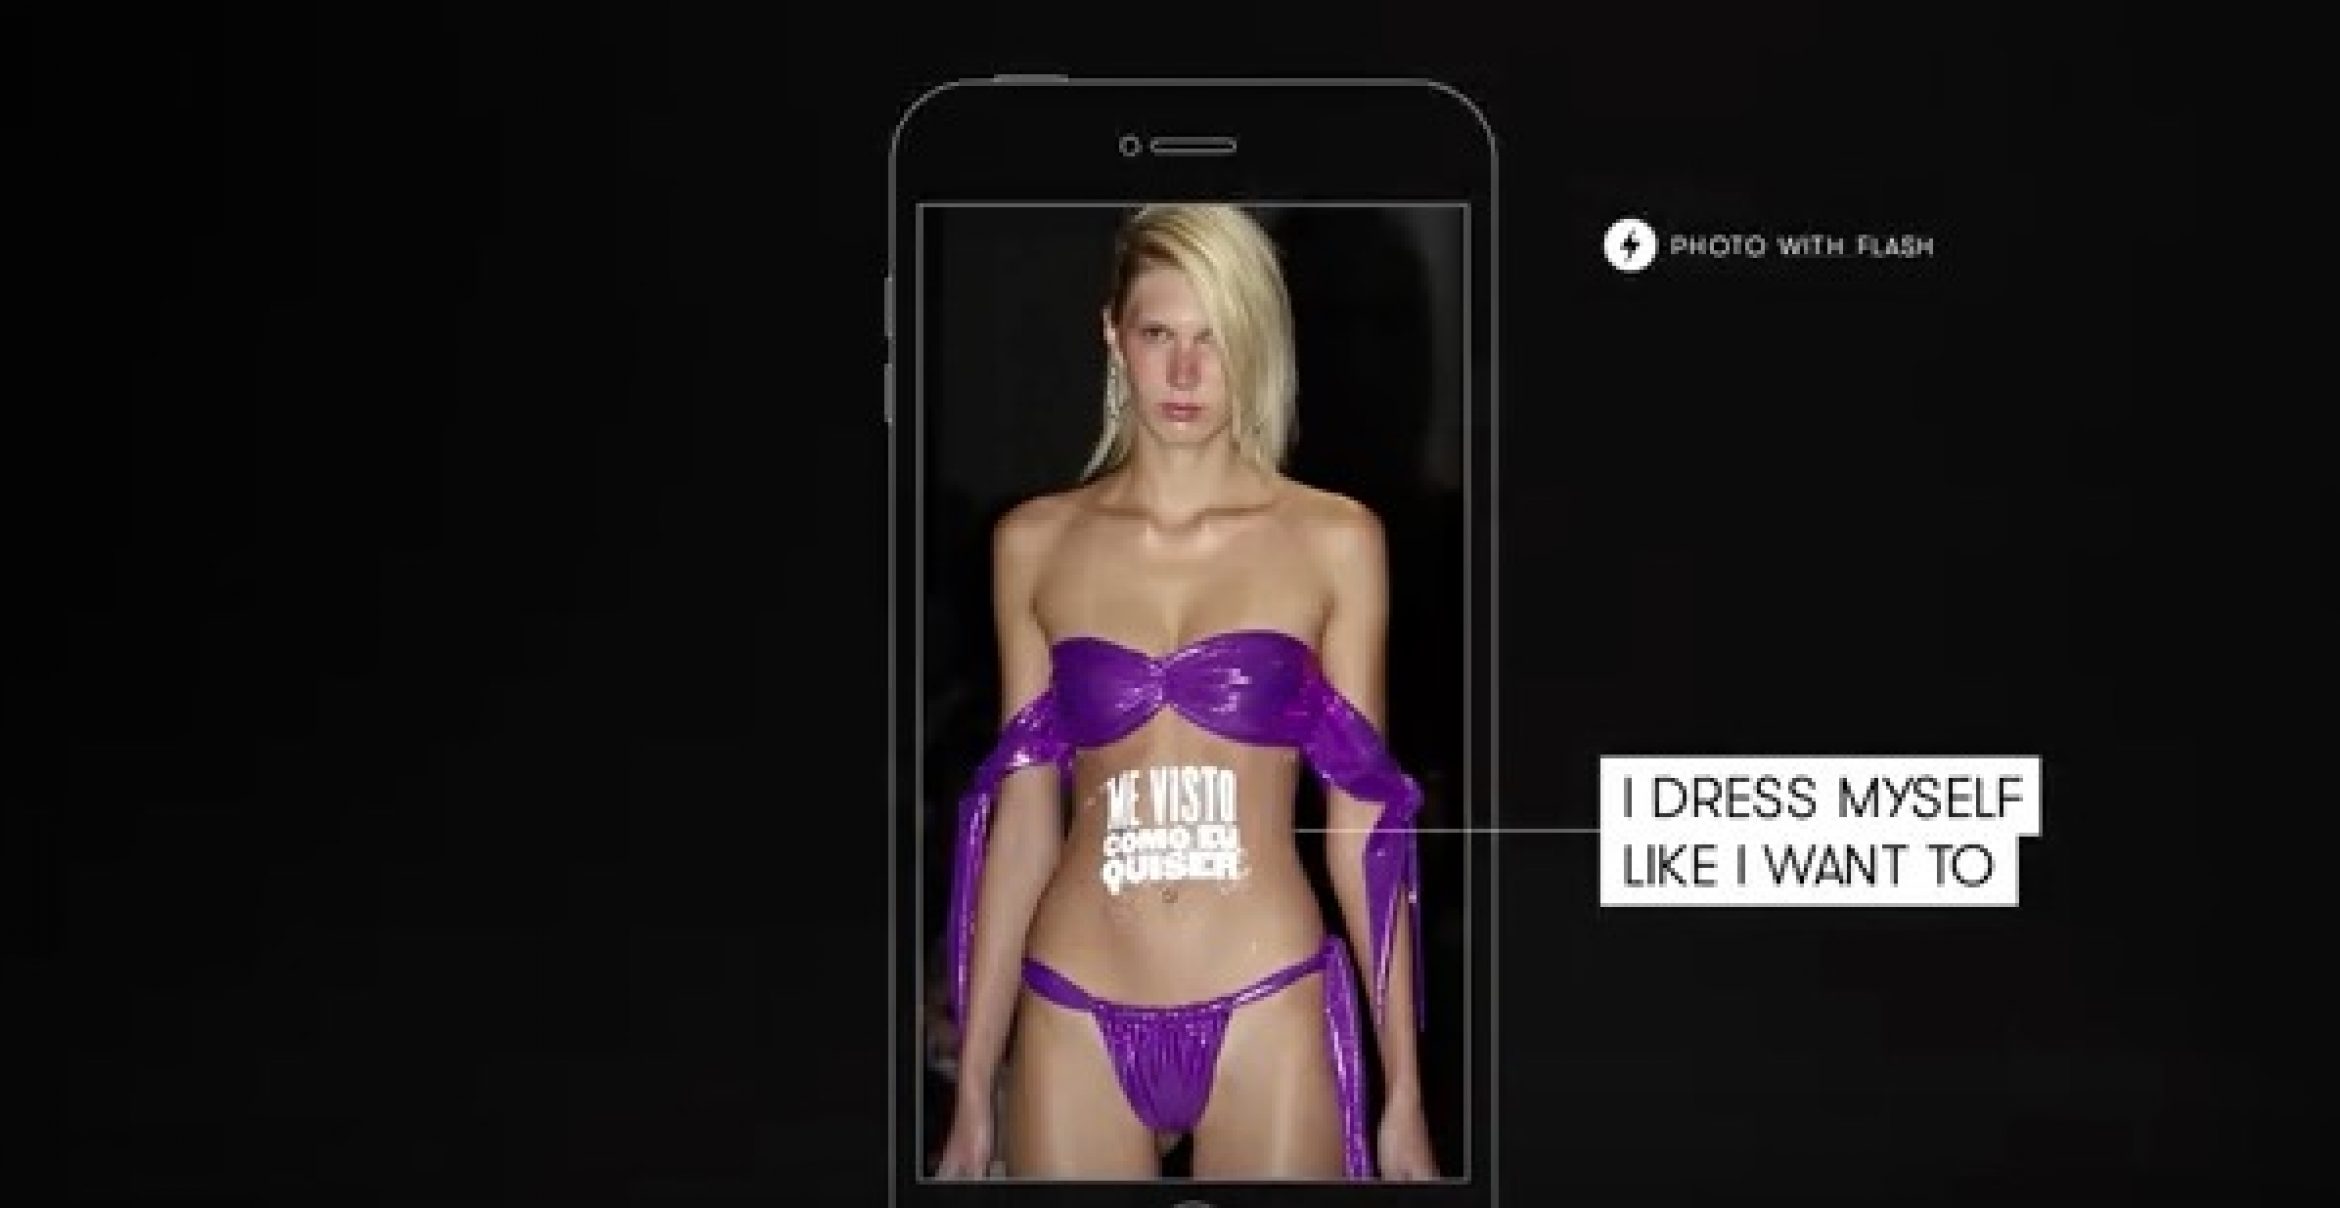 Kampagne gegen Sexismus nutzt Models als Projektionsfläche